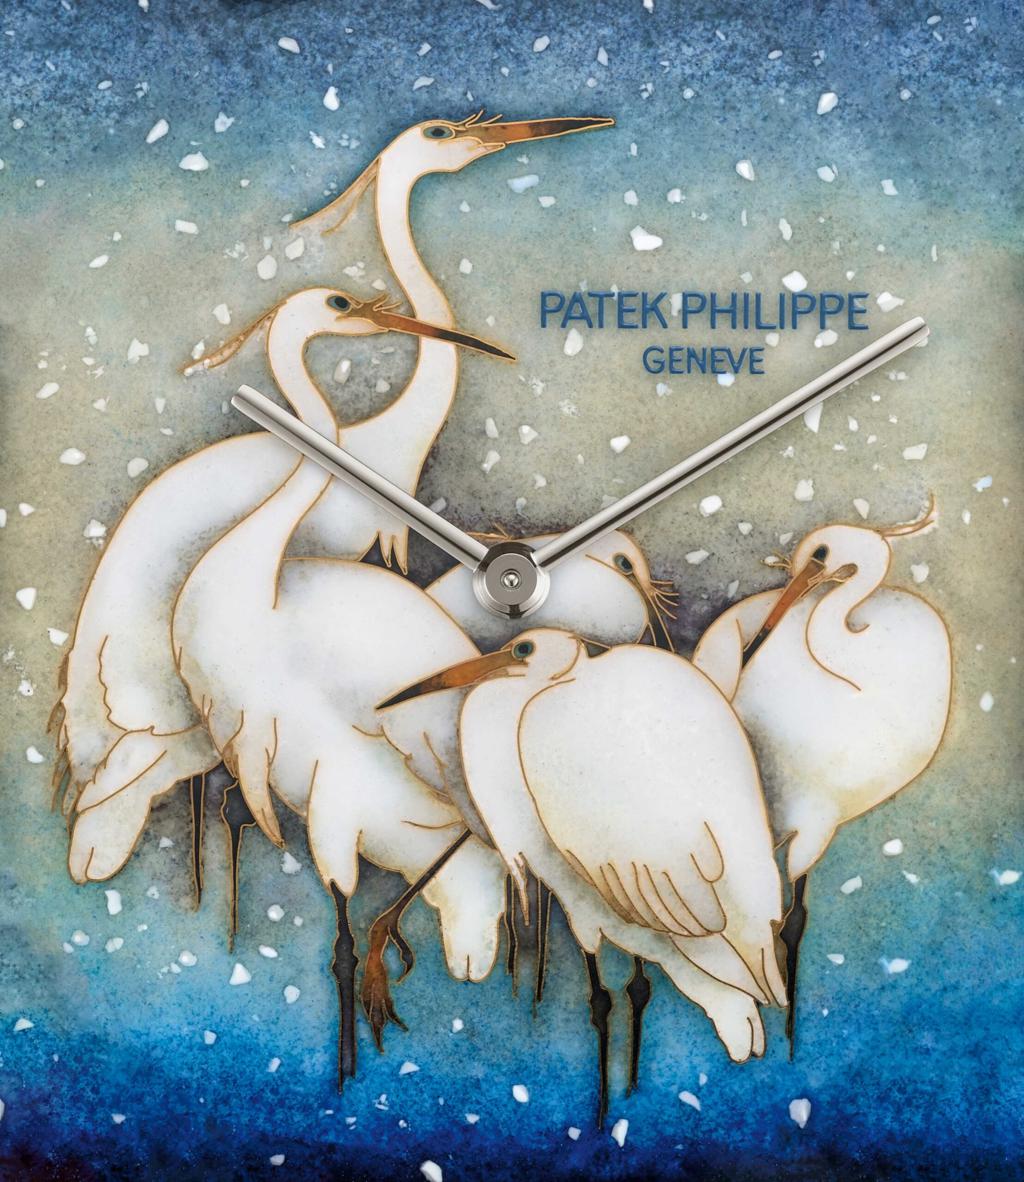 百達翡麗編號5738/50G-026「白鷺」（White Egrets）Golden Ellipse腕表，融入掐絲琺瑯工藝。（Patek Philippe提供)